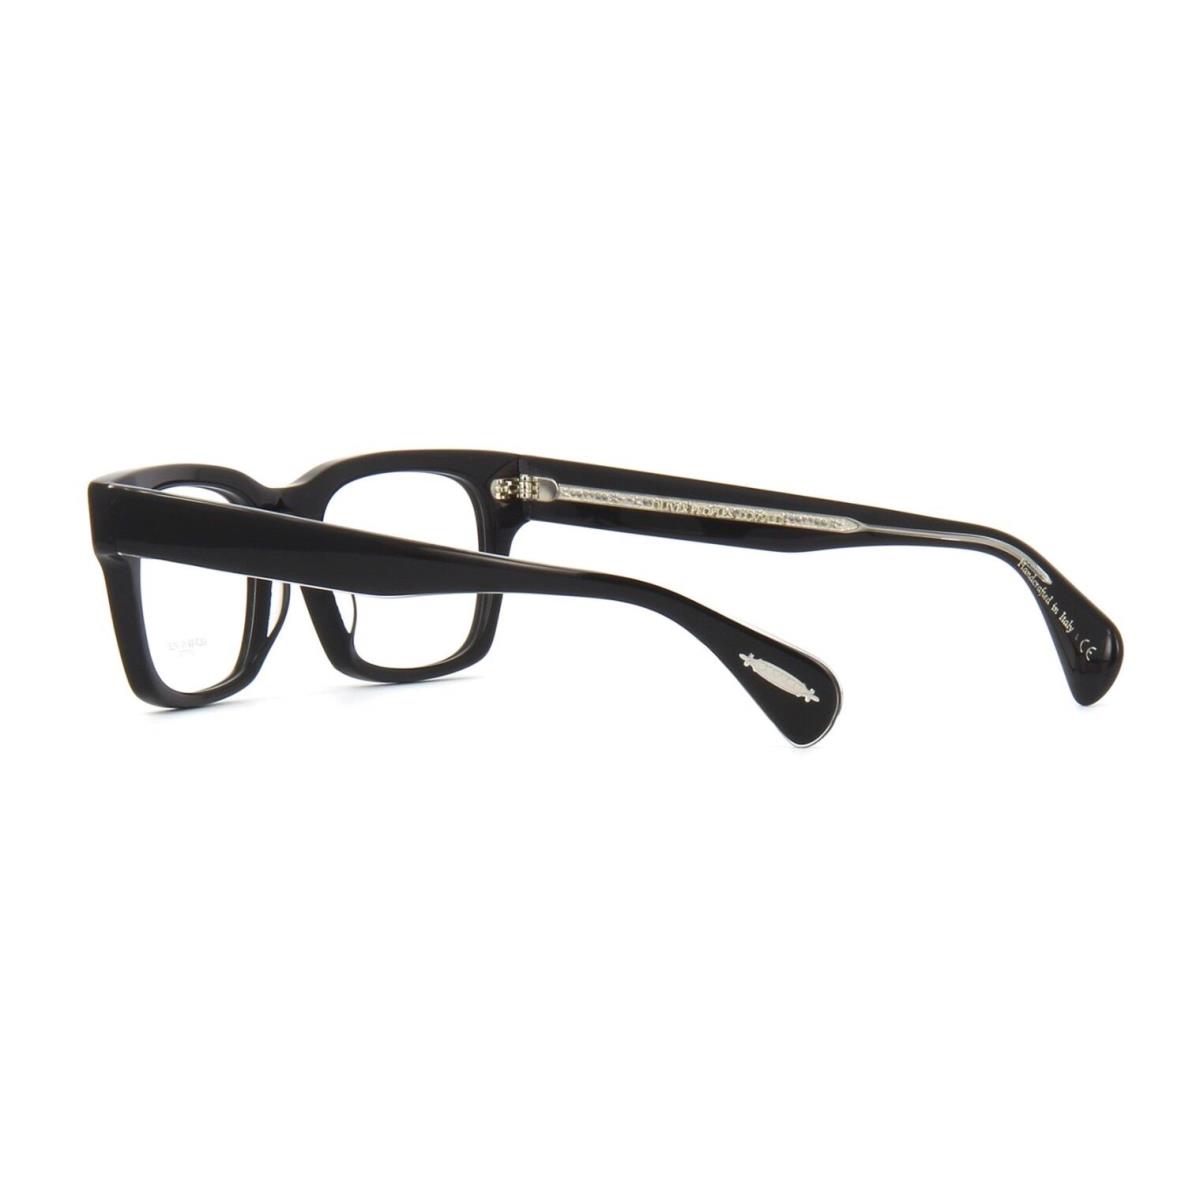 Oliver Peoples eyeglasses  - Black Frame 1